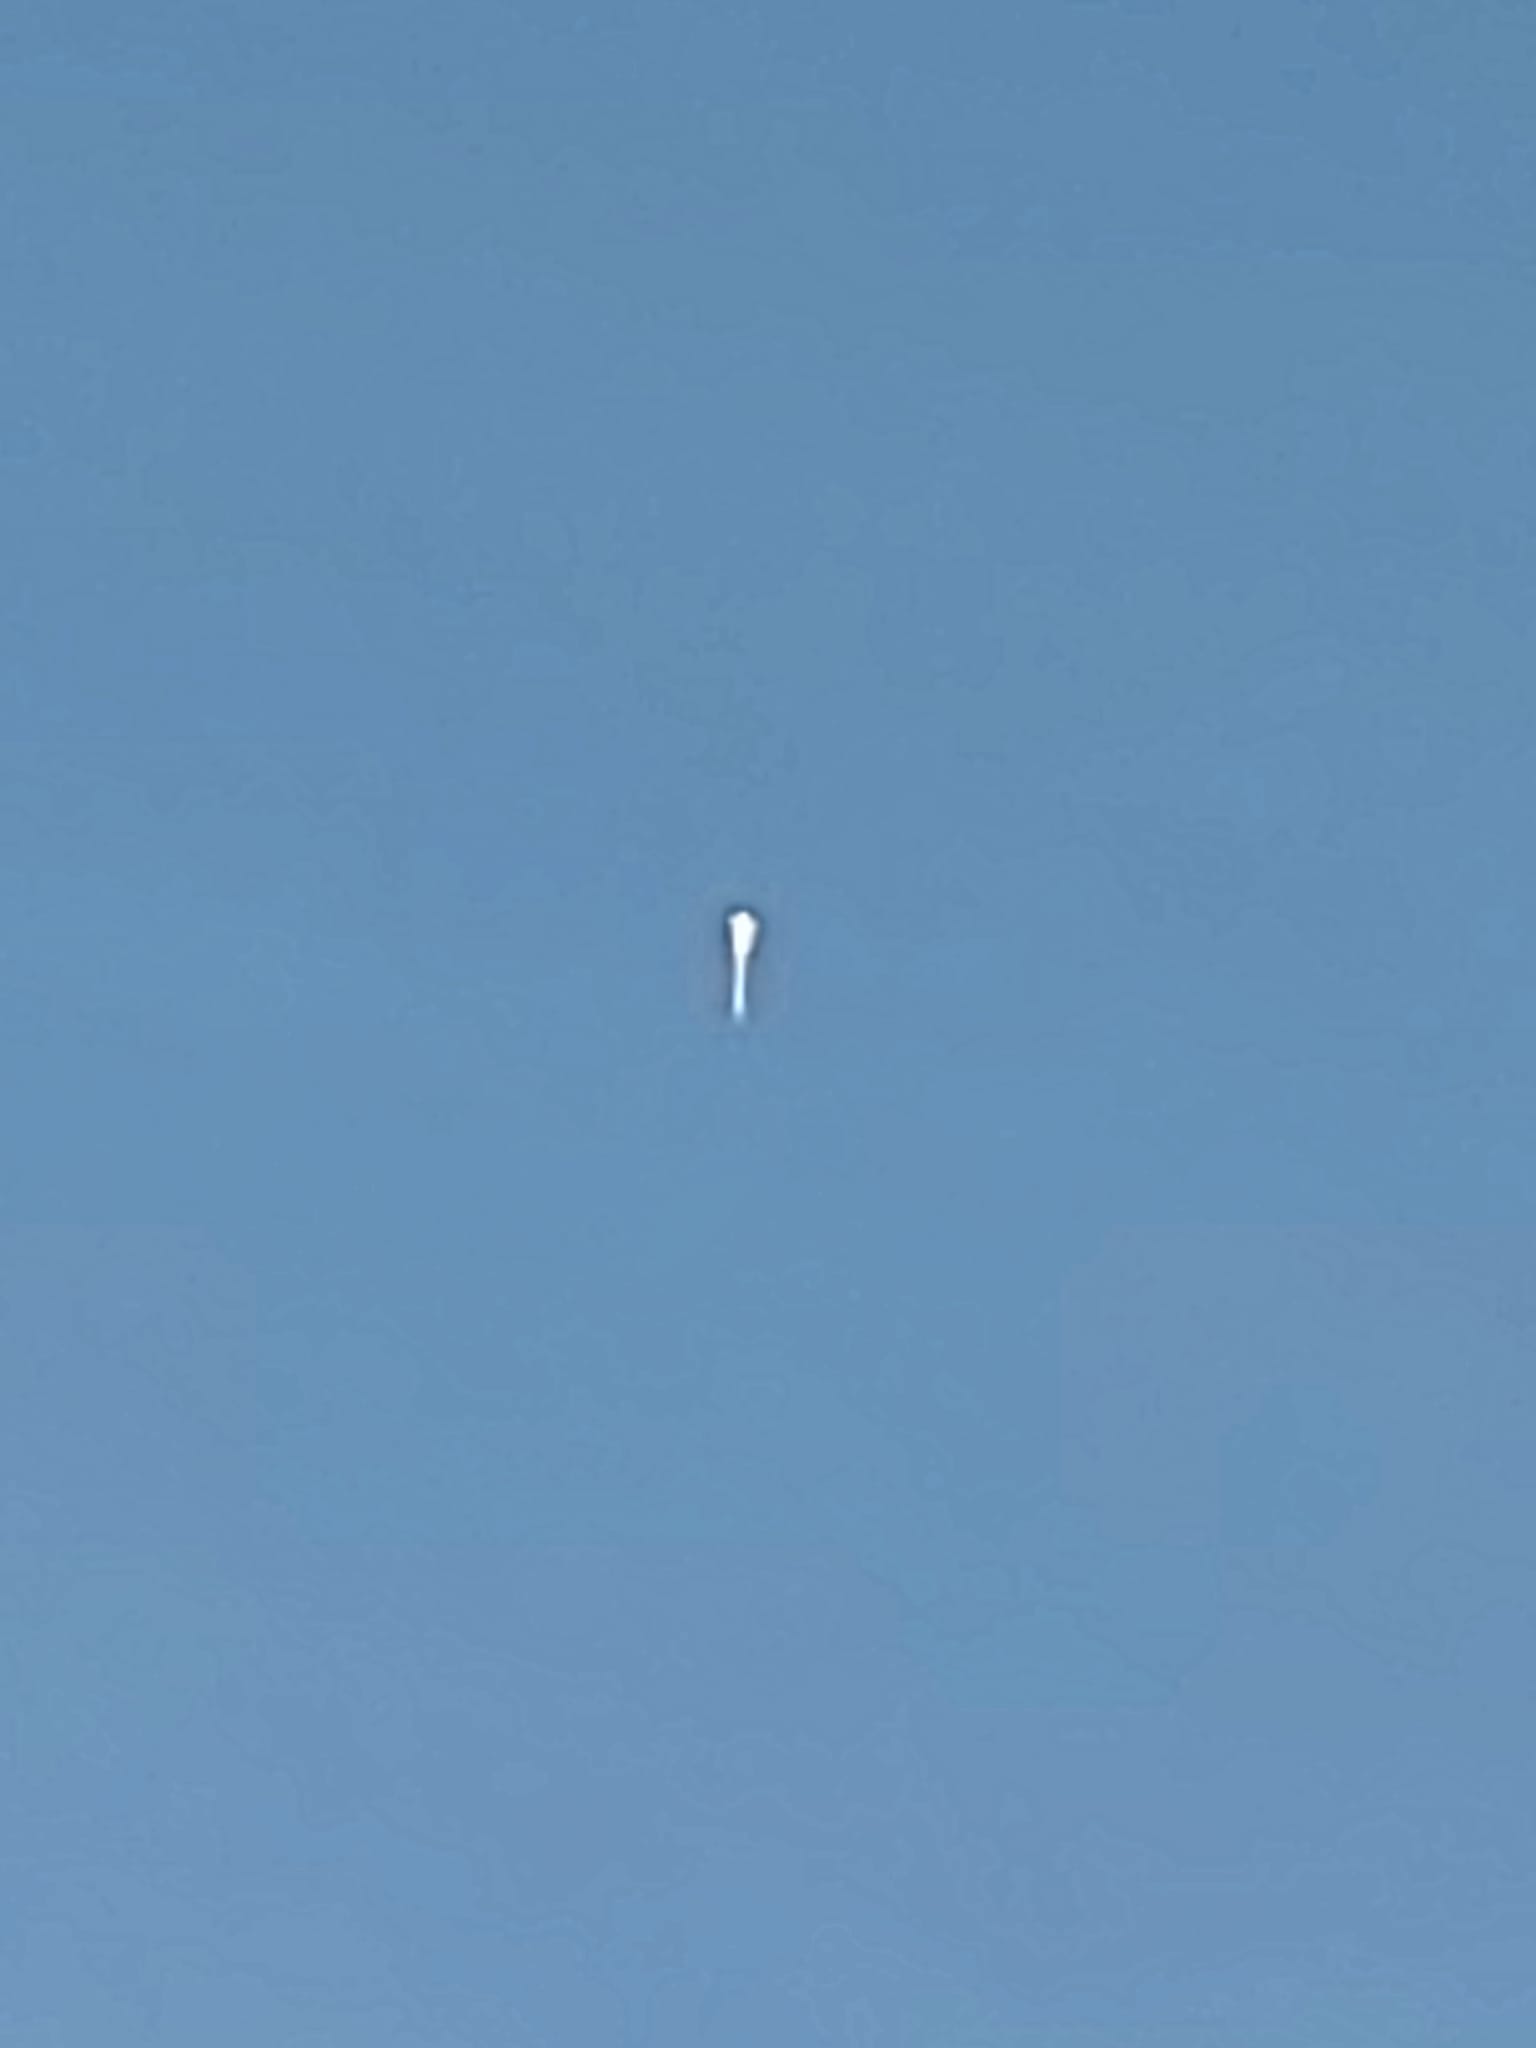 The balloon ascending above Tillamook (Image by Rueben Descloux)